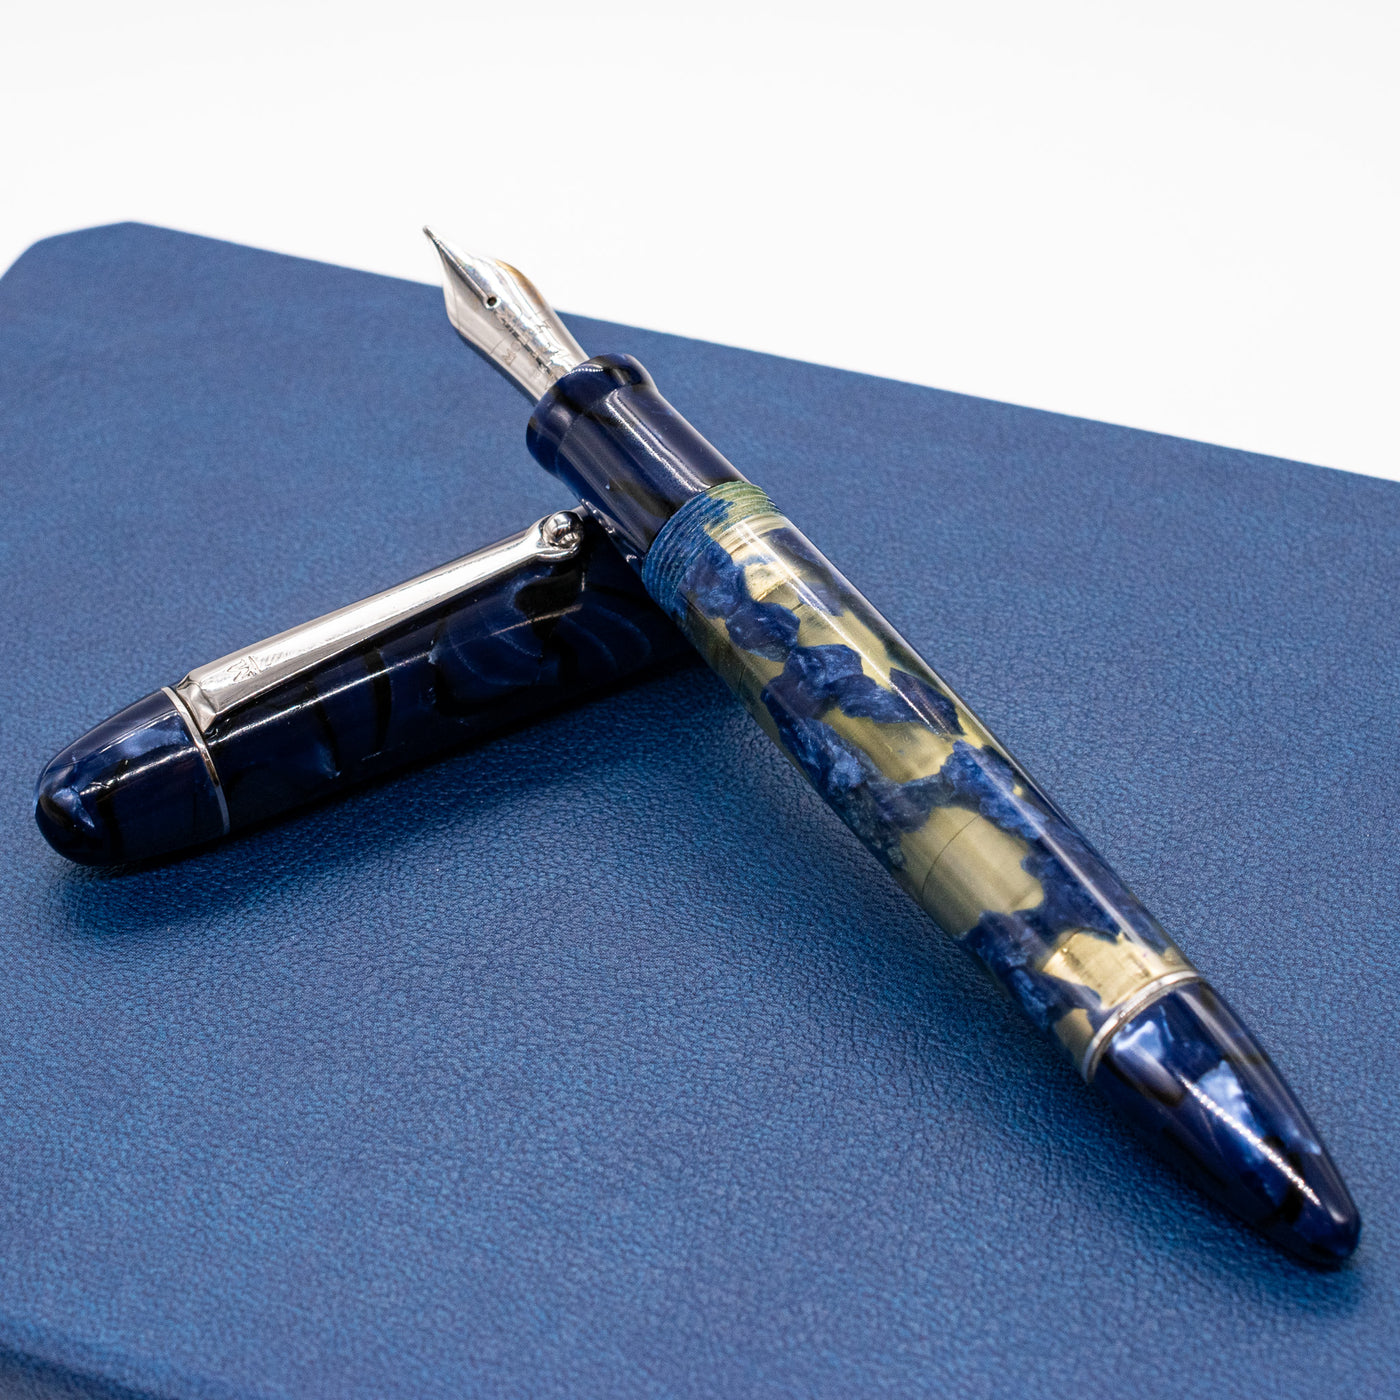 Molteni Modelo 55 Fountain Pen - Royal Blue Lucens Celluloid piston filled